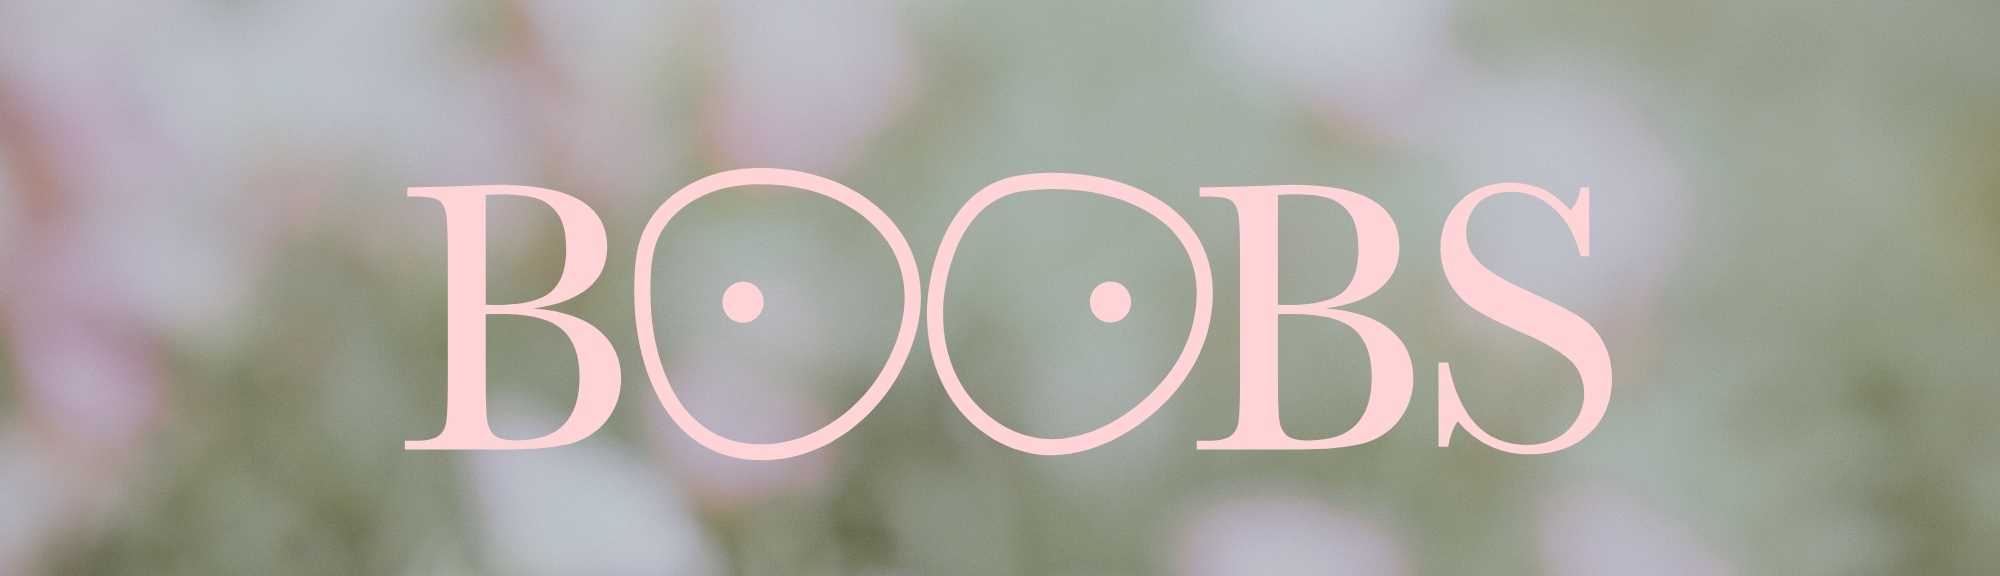 Boobs-valokuvanäytelyn vaaleanpunainen tekstilogo